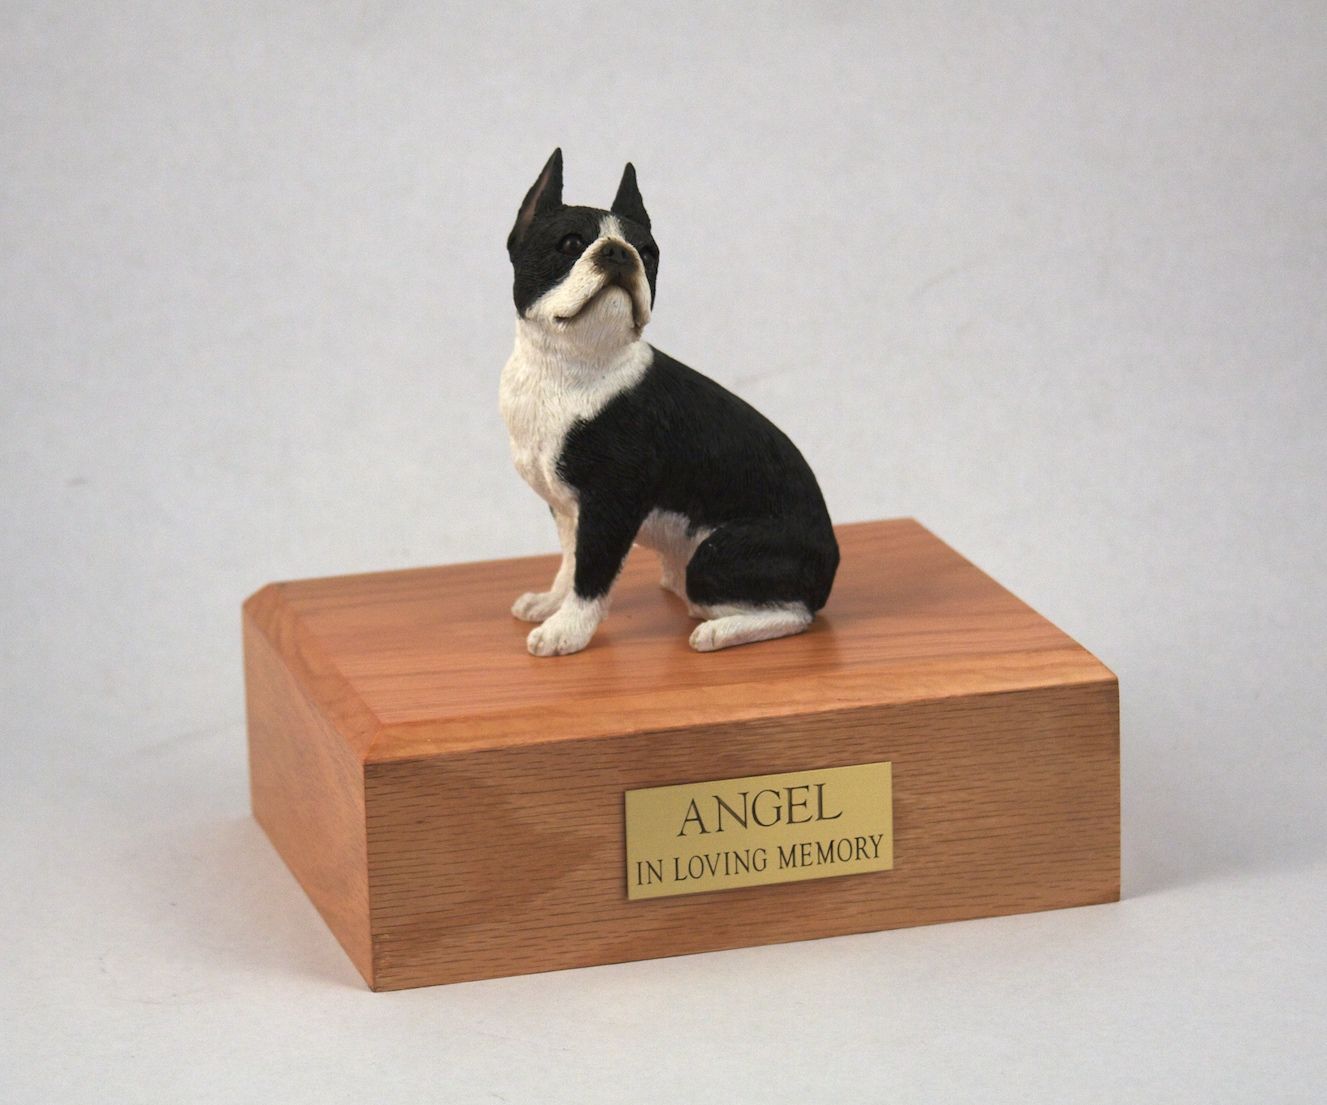 Dog, Boston Terrier - Figurine Urn